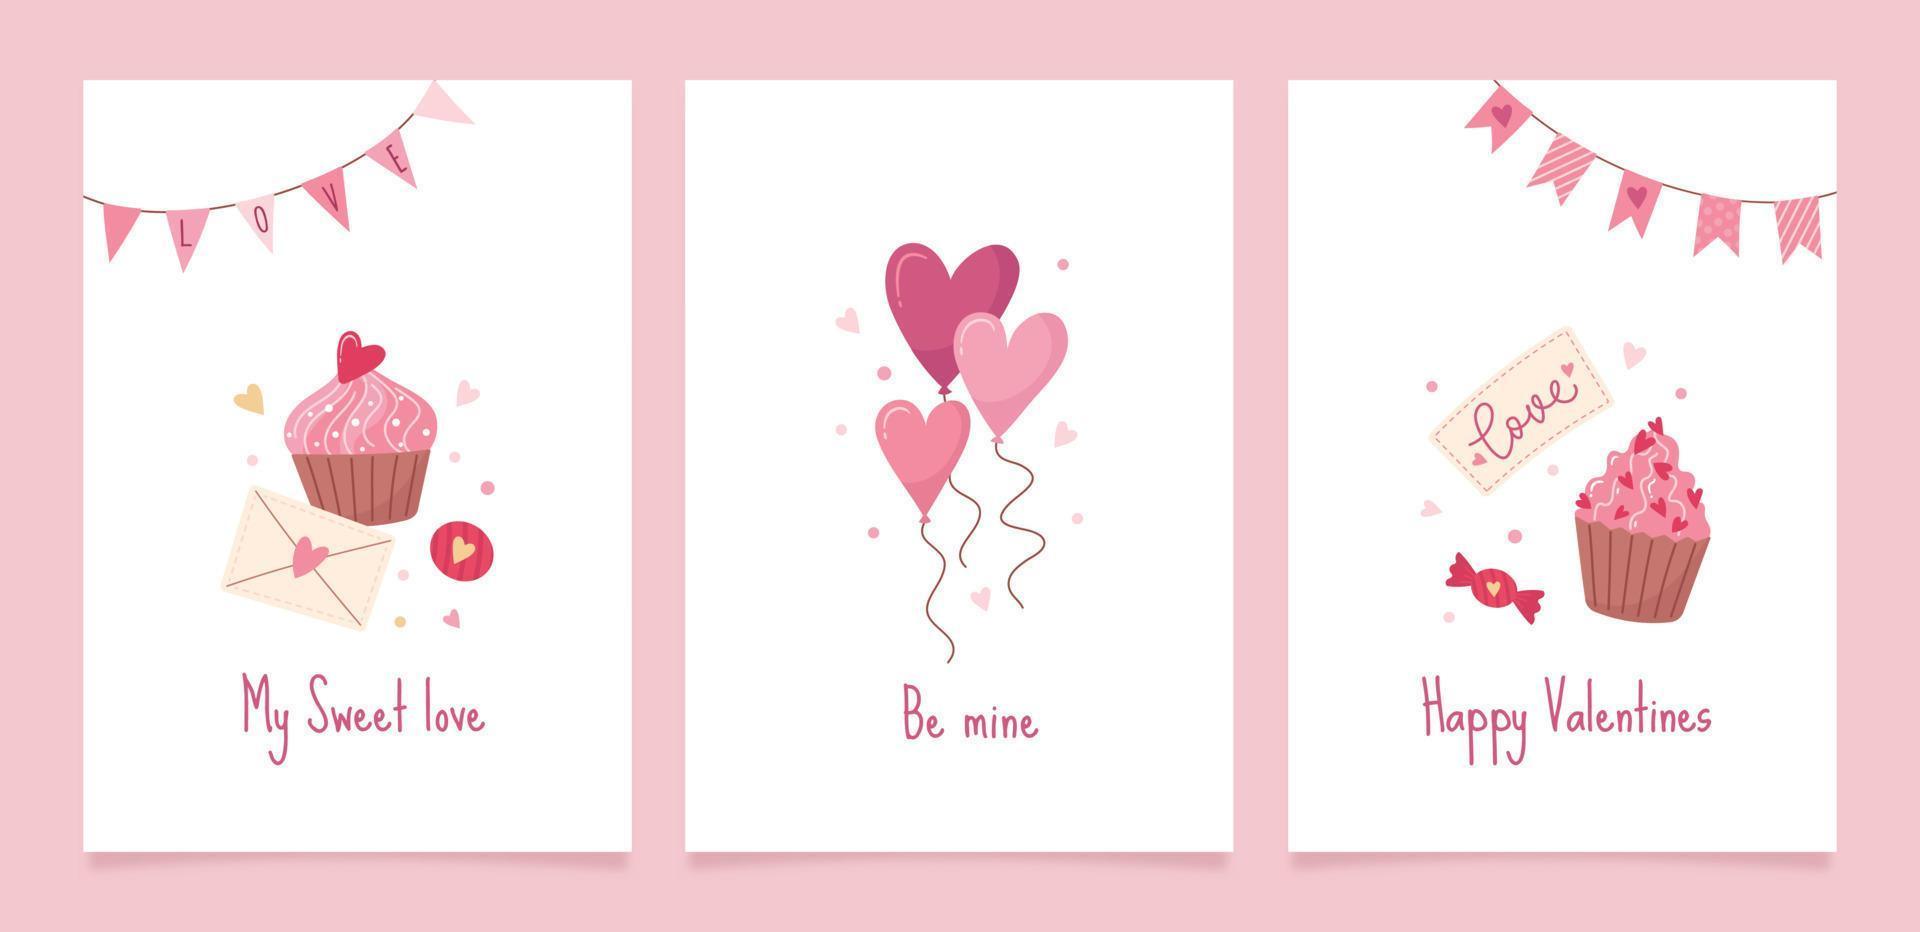 conjunto de tarjetas de felicitación para el día de san valentín. lindas ilustraciones vectoriales con elementos decorativos festivos, corazón, sobre, dulces, globos e inscripciones. vector